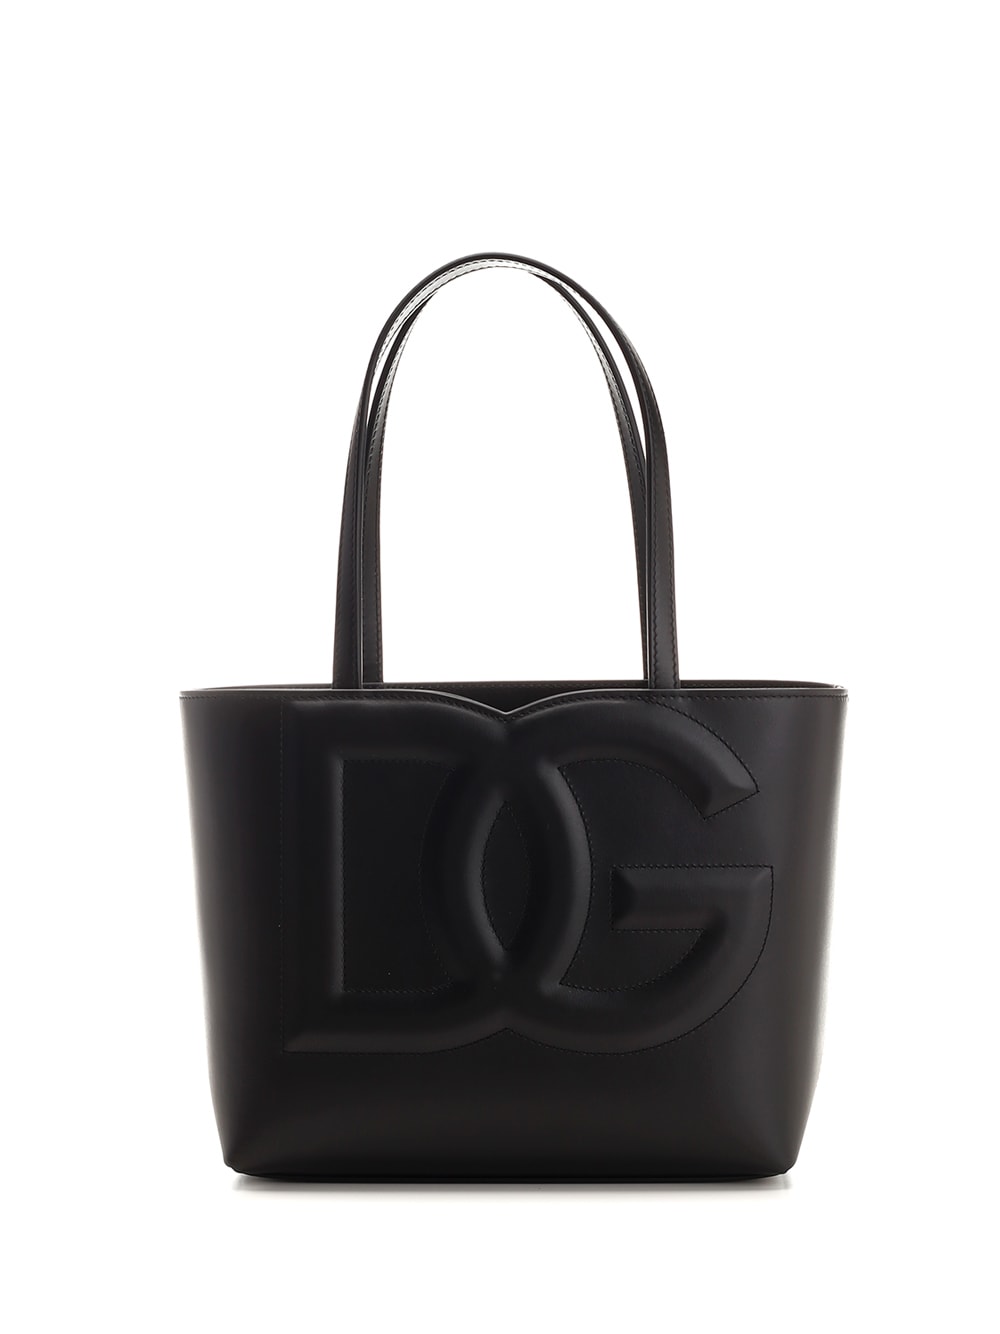 Dolce & Gabbana Dg Leather Tote In Black